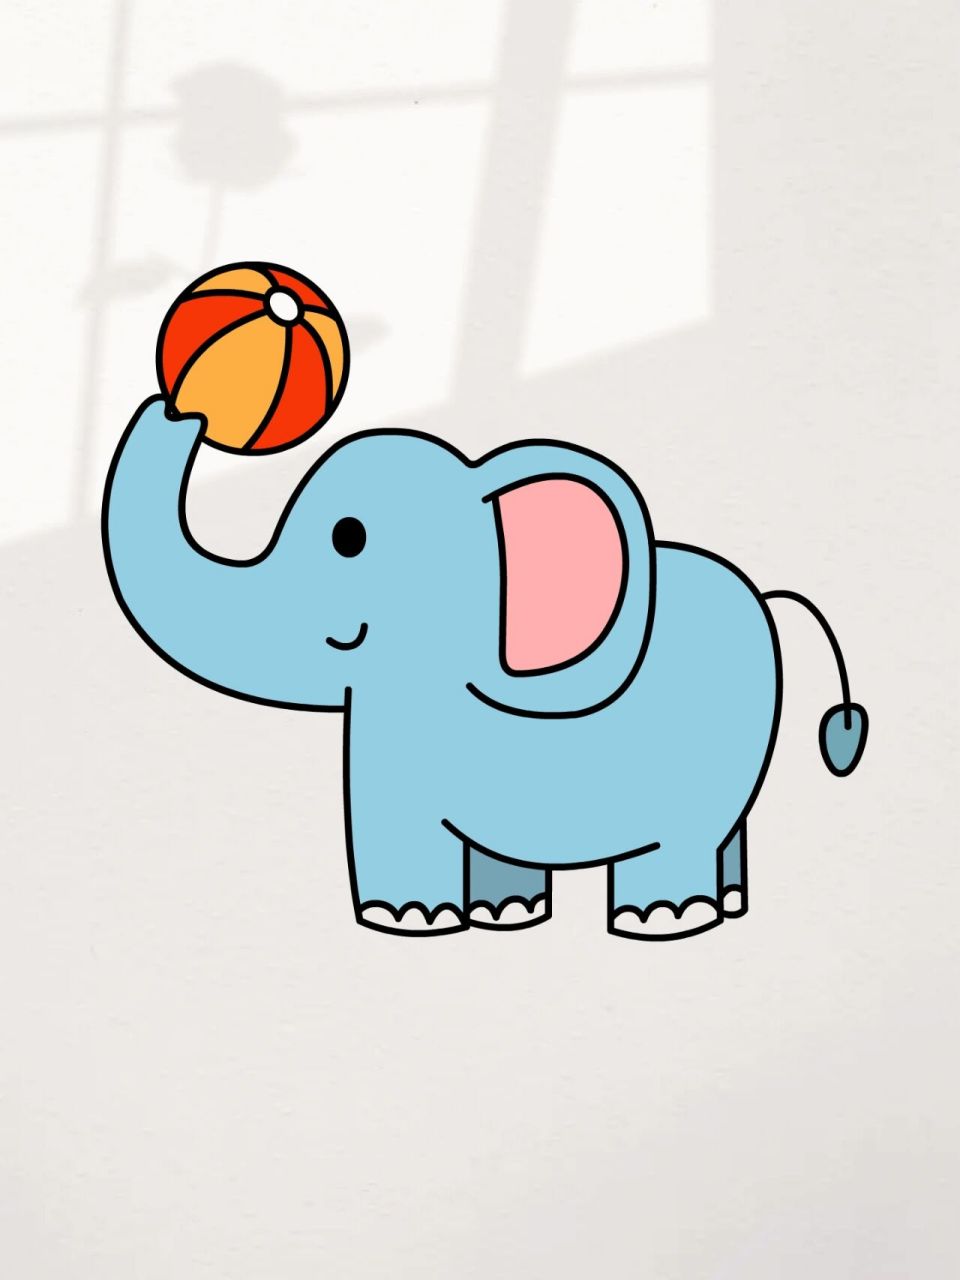 大象简笔画彩色简单图片